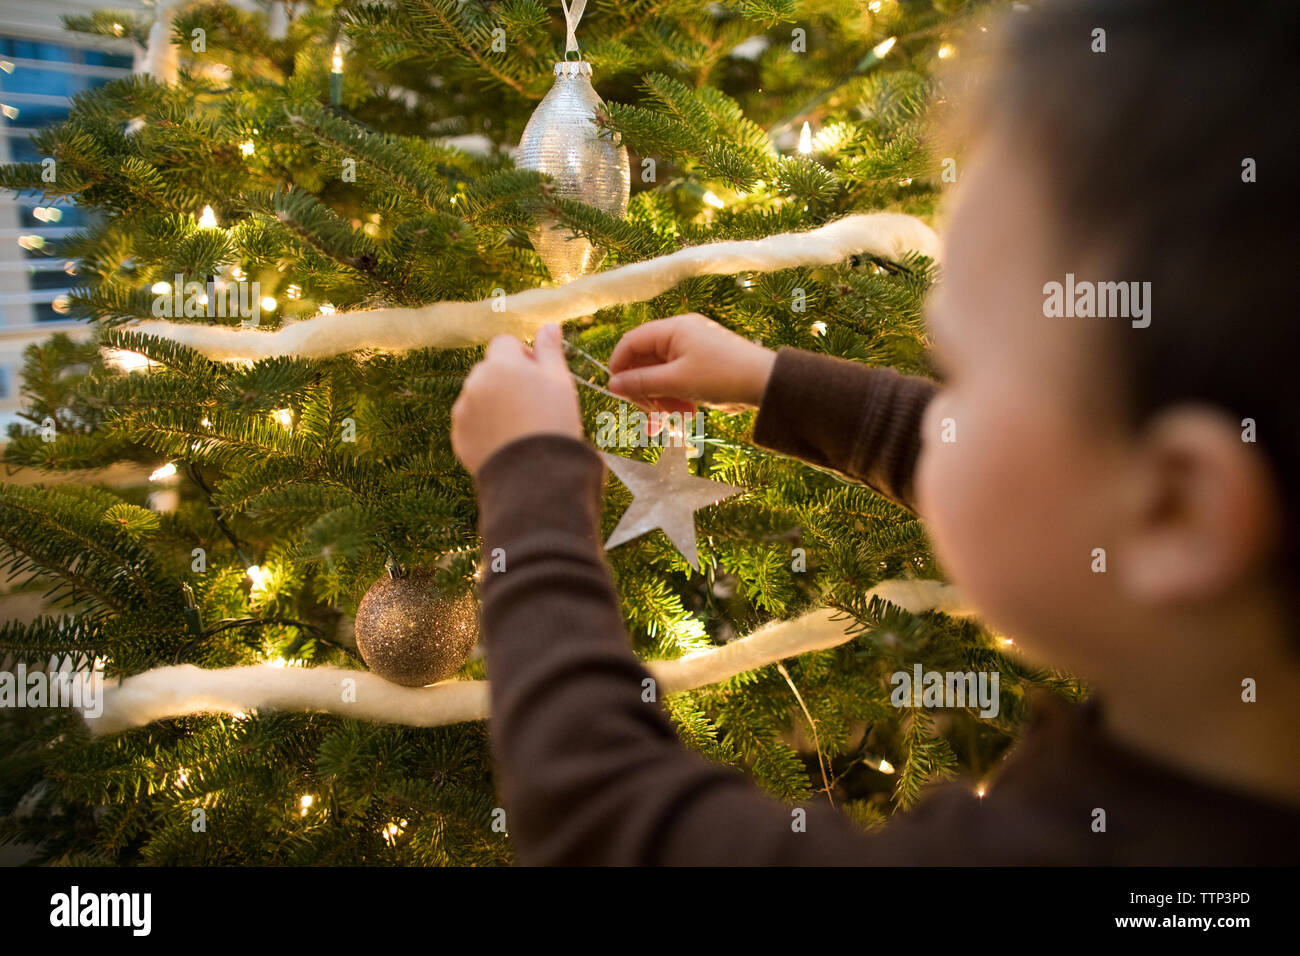 Toddler boy verzieren die Familie Weihnachtsbaum Stockfoto